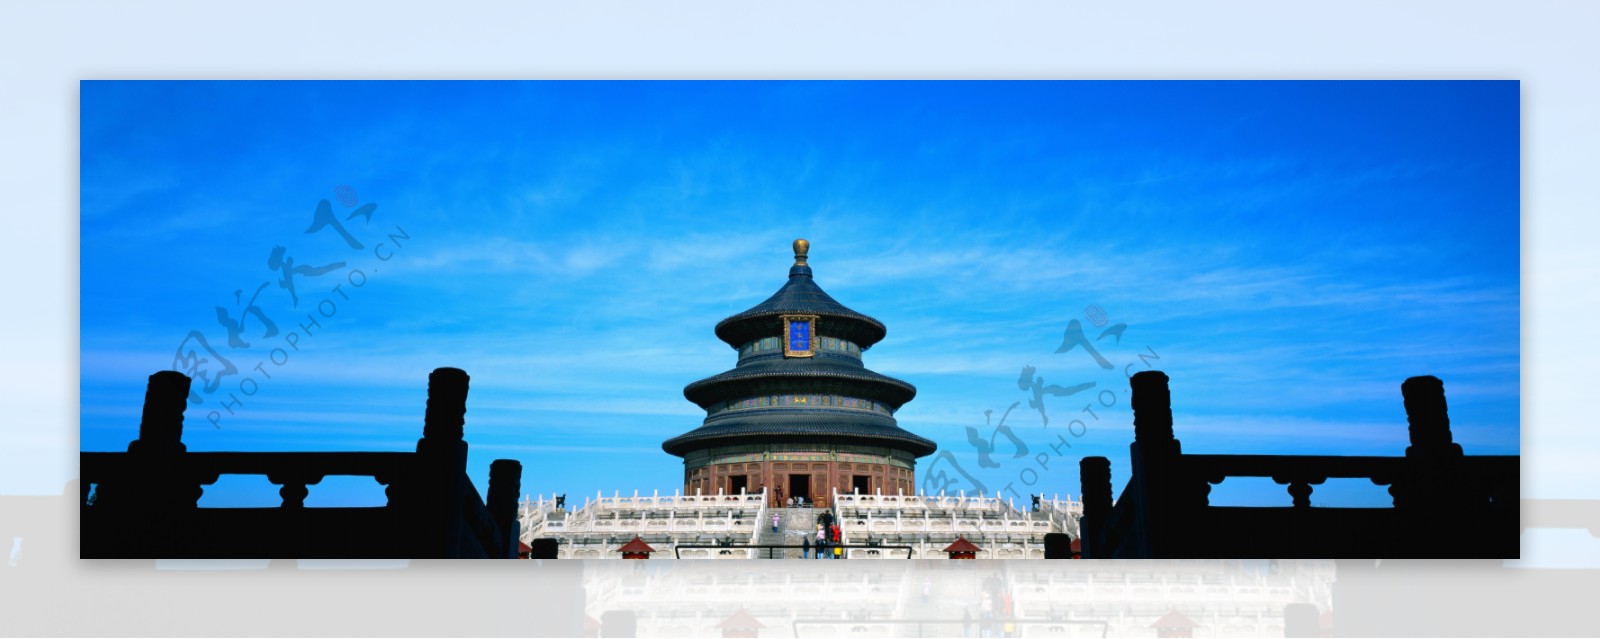 北京天坛巨幅蓝天白云珍贵图片